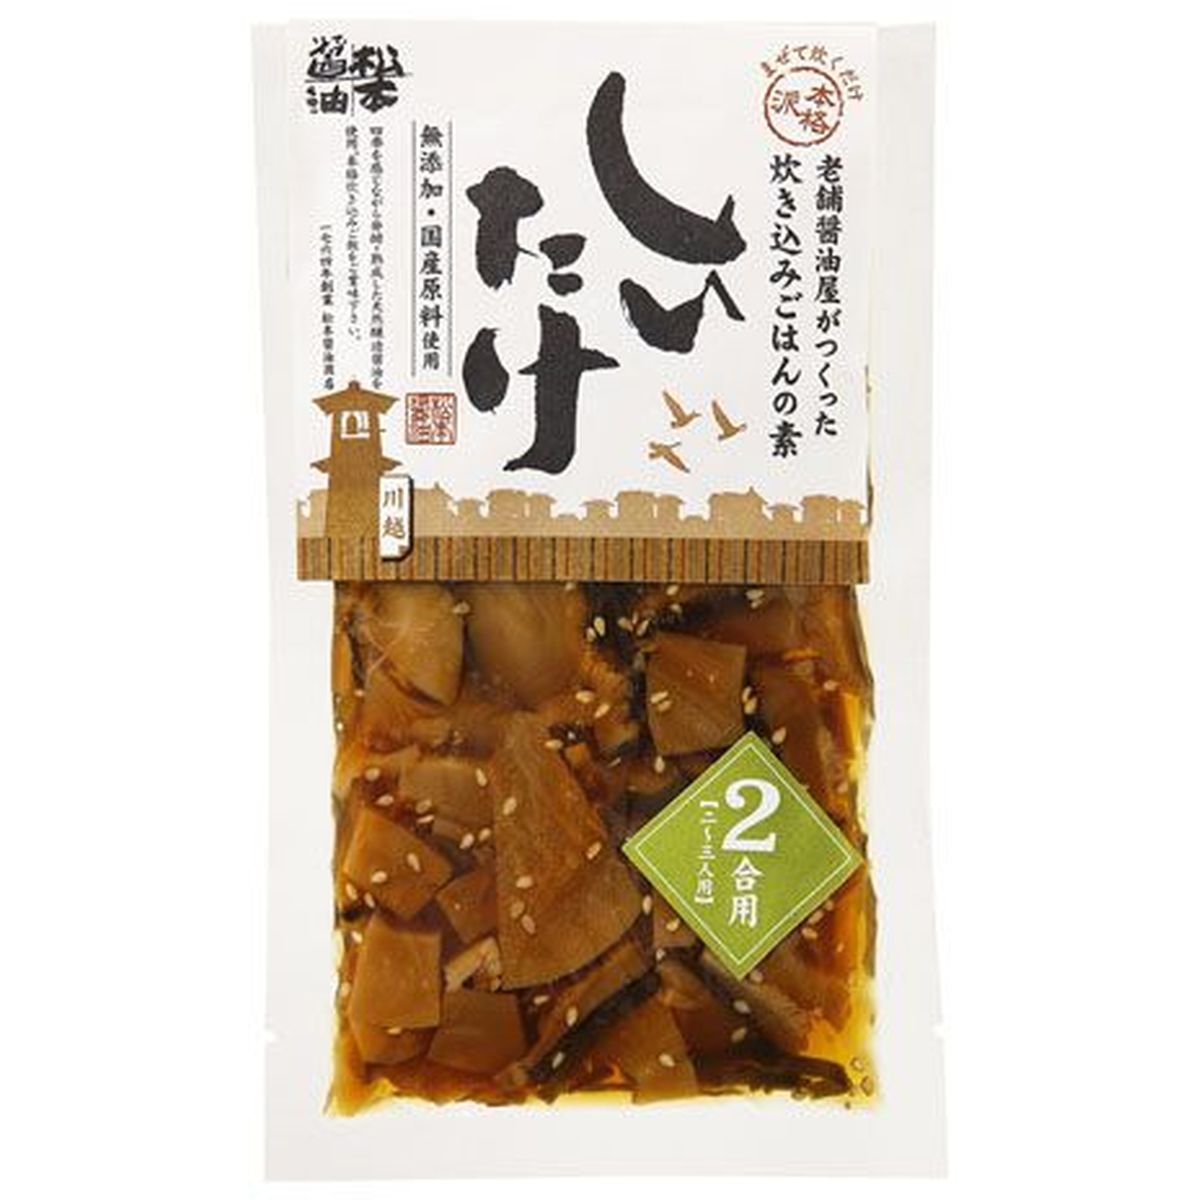 【20個入リ】松本醤油 炊キ込ミゴ飯ノ素2合用シイタケ 90g